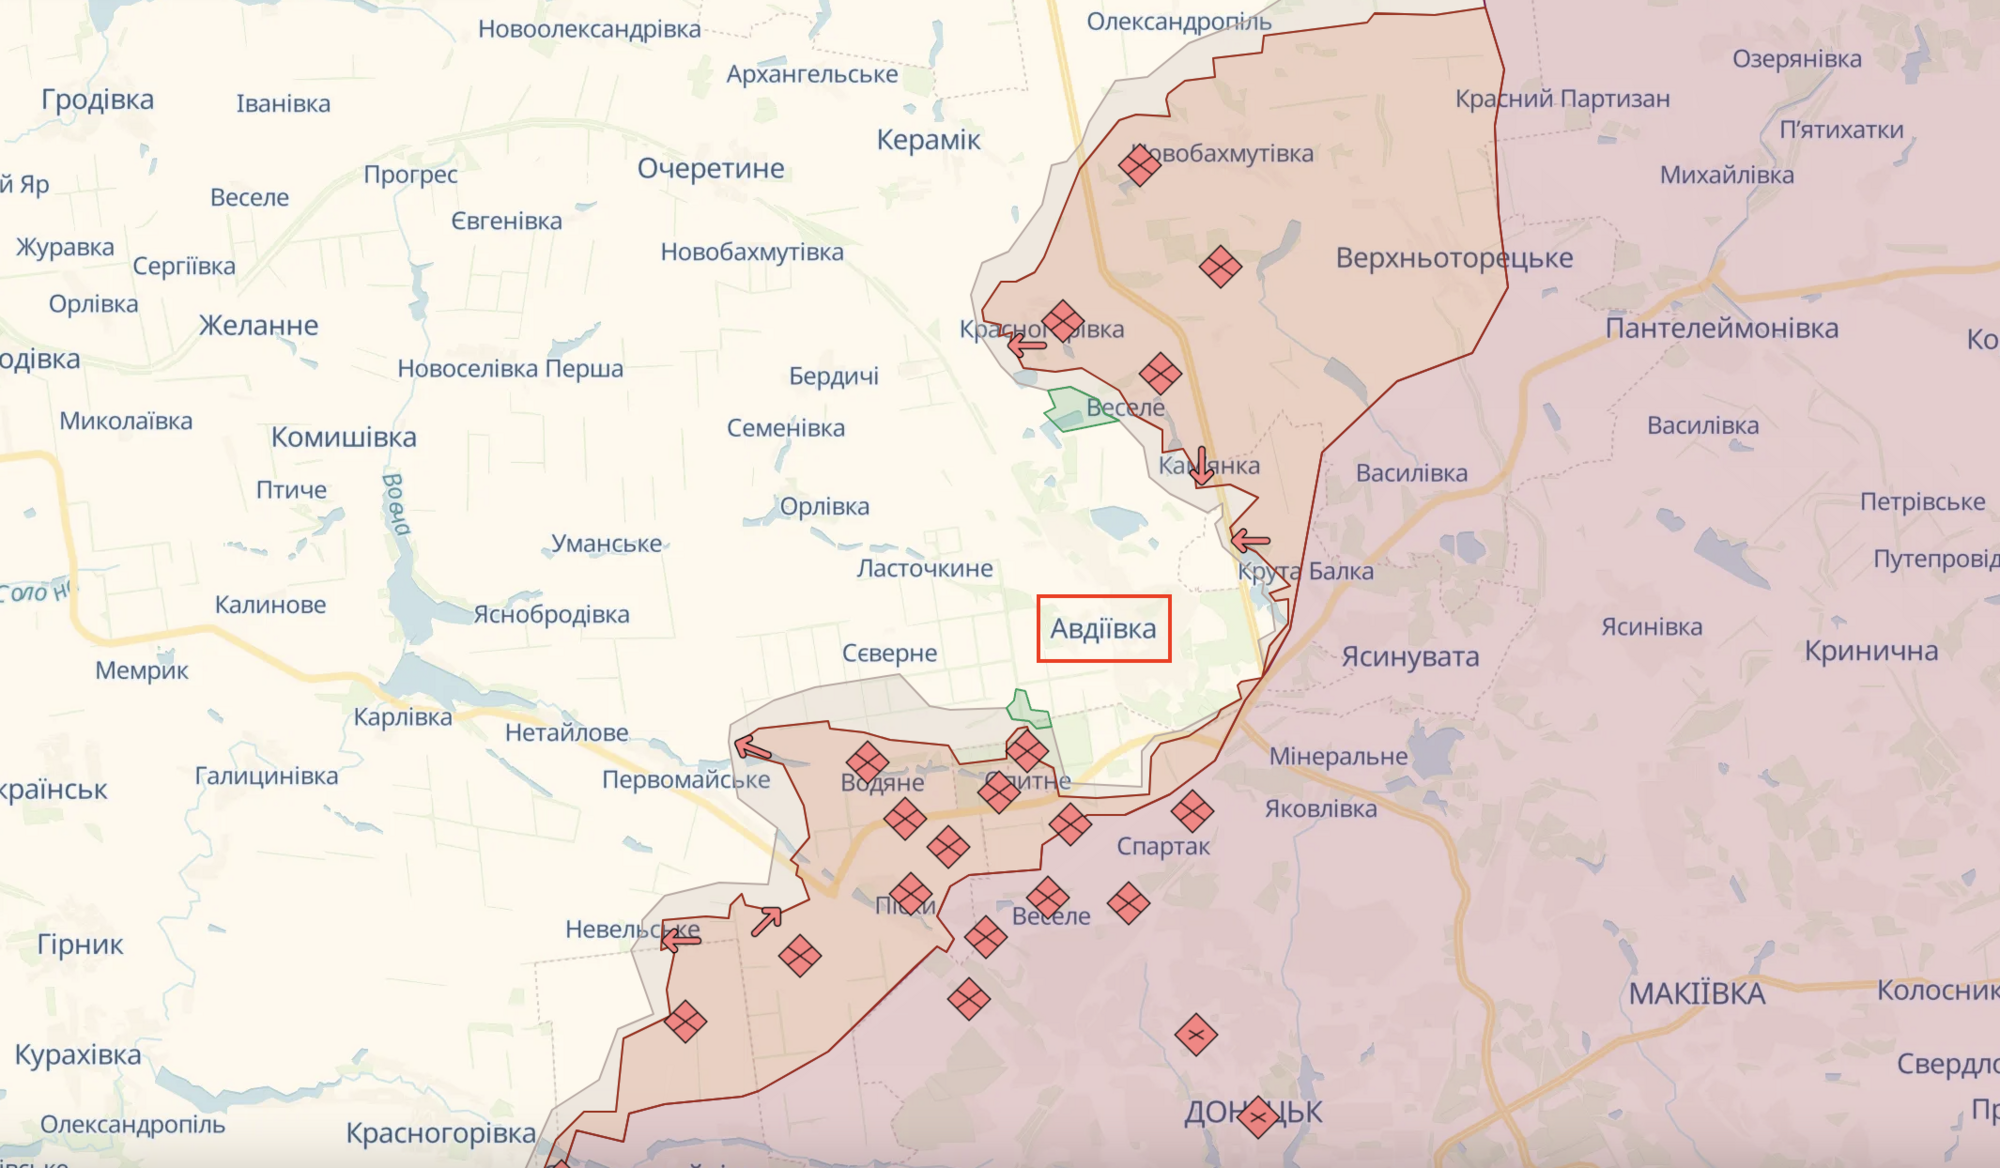 Держать оборону приходится в крайне тяжелых условиях: бойцы ГПСУ рассказали о боях под Авдеевкой. Видео